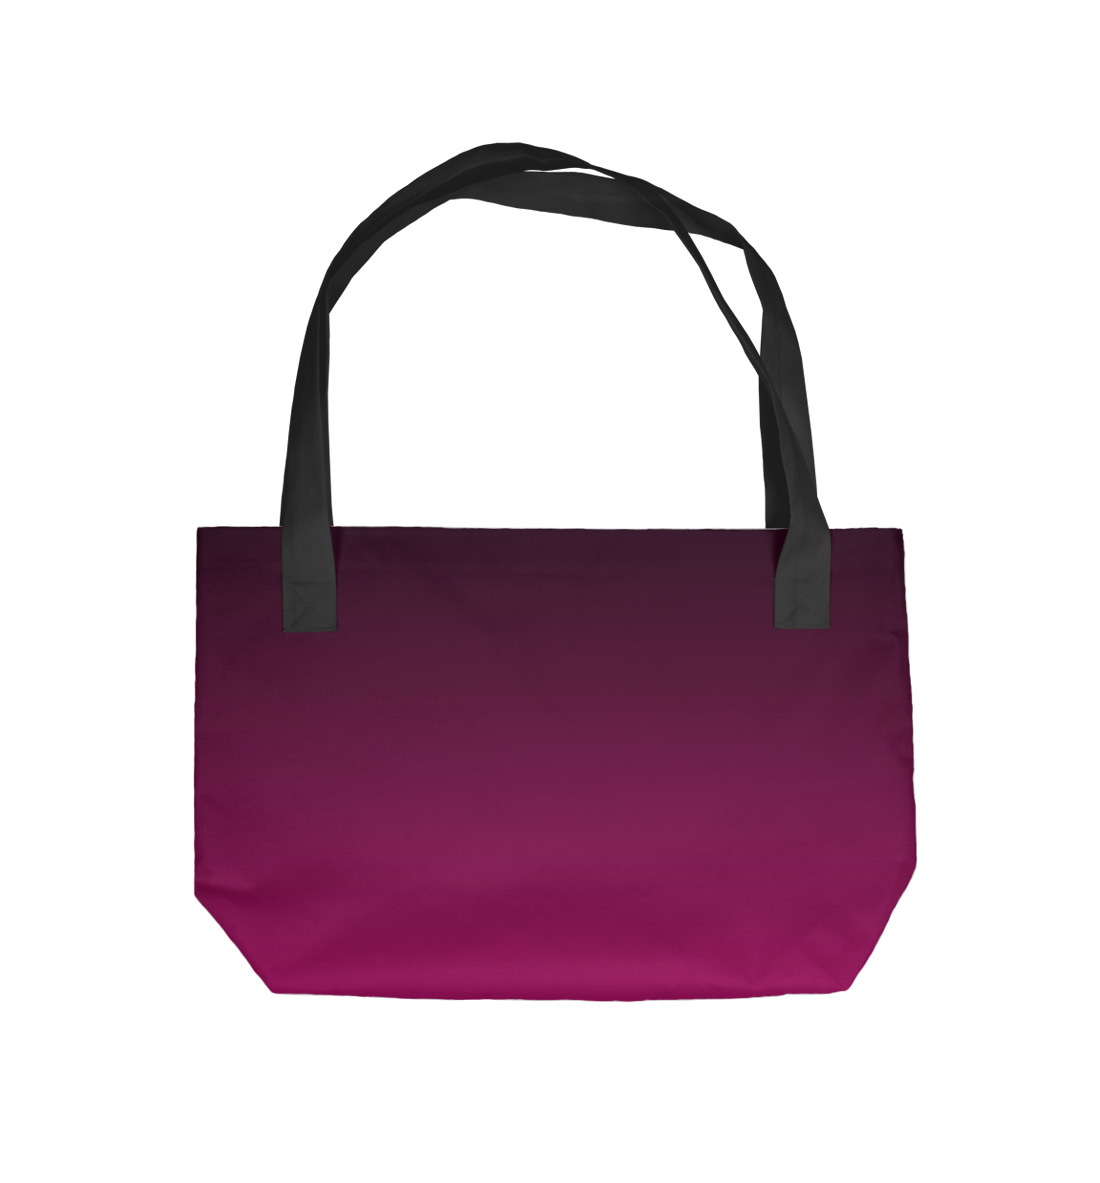 Купить Пляжная сумка Градиент Розовый в Черный, артикул CLR-560218-supmp